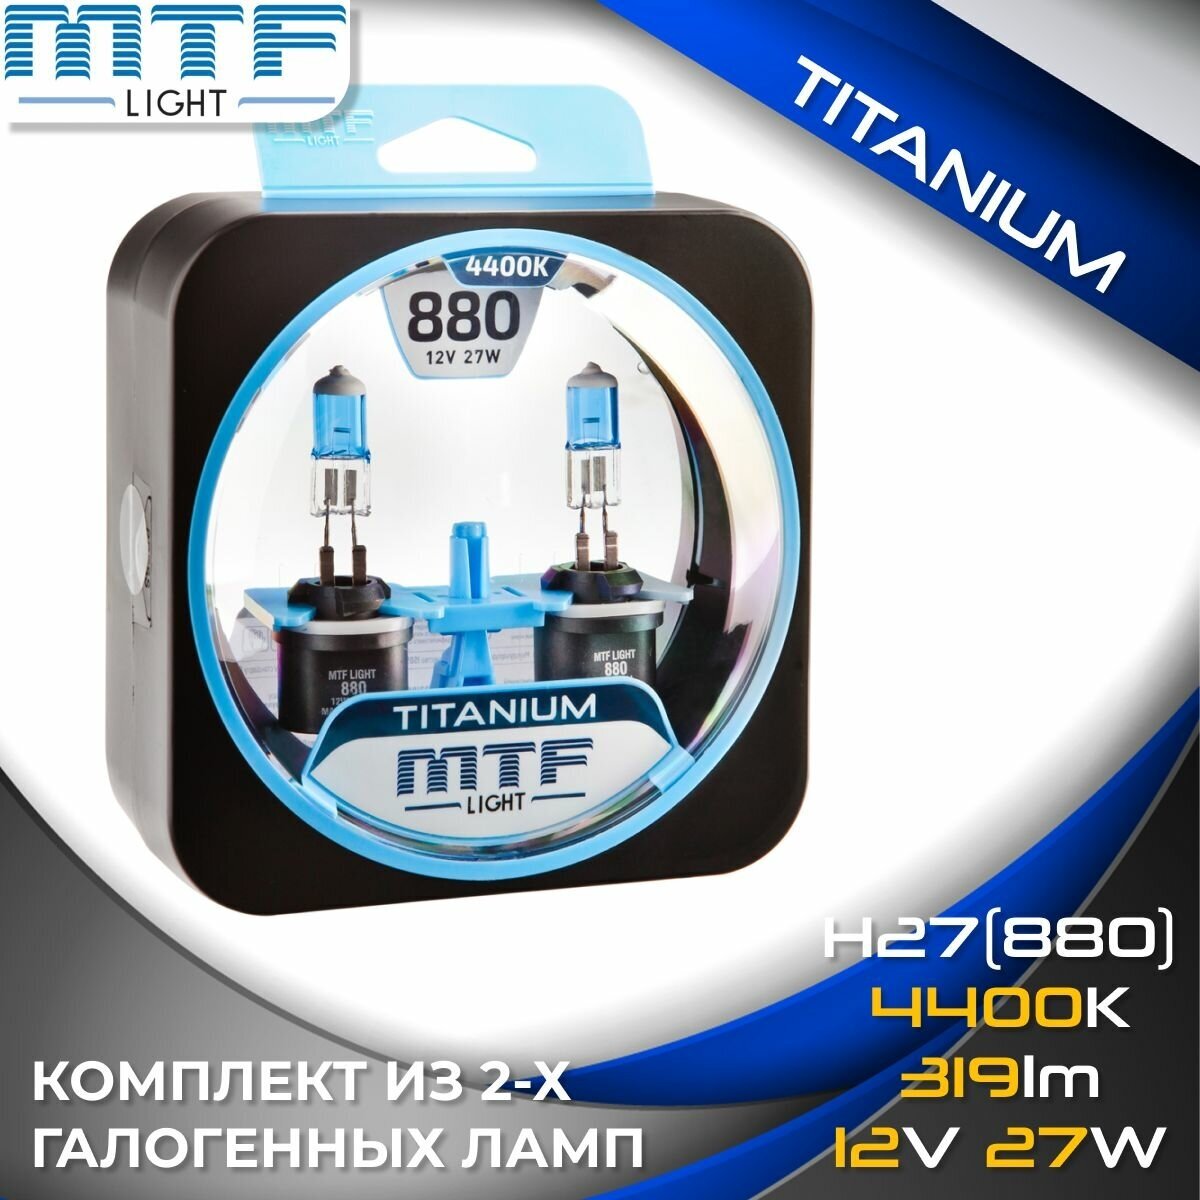 Галогенные автолампы MTF Light серия TITANIUM Н27(880), 12V, 27W (комплект 2 шт.)